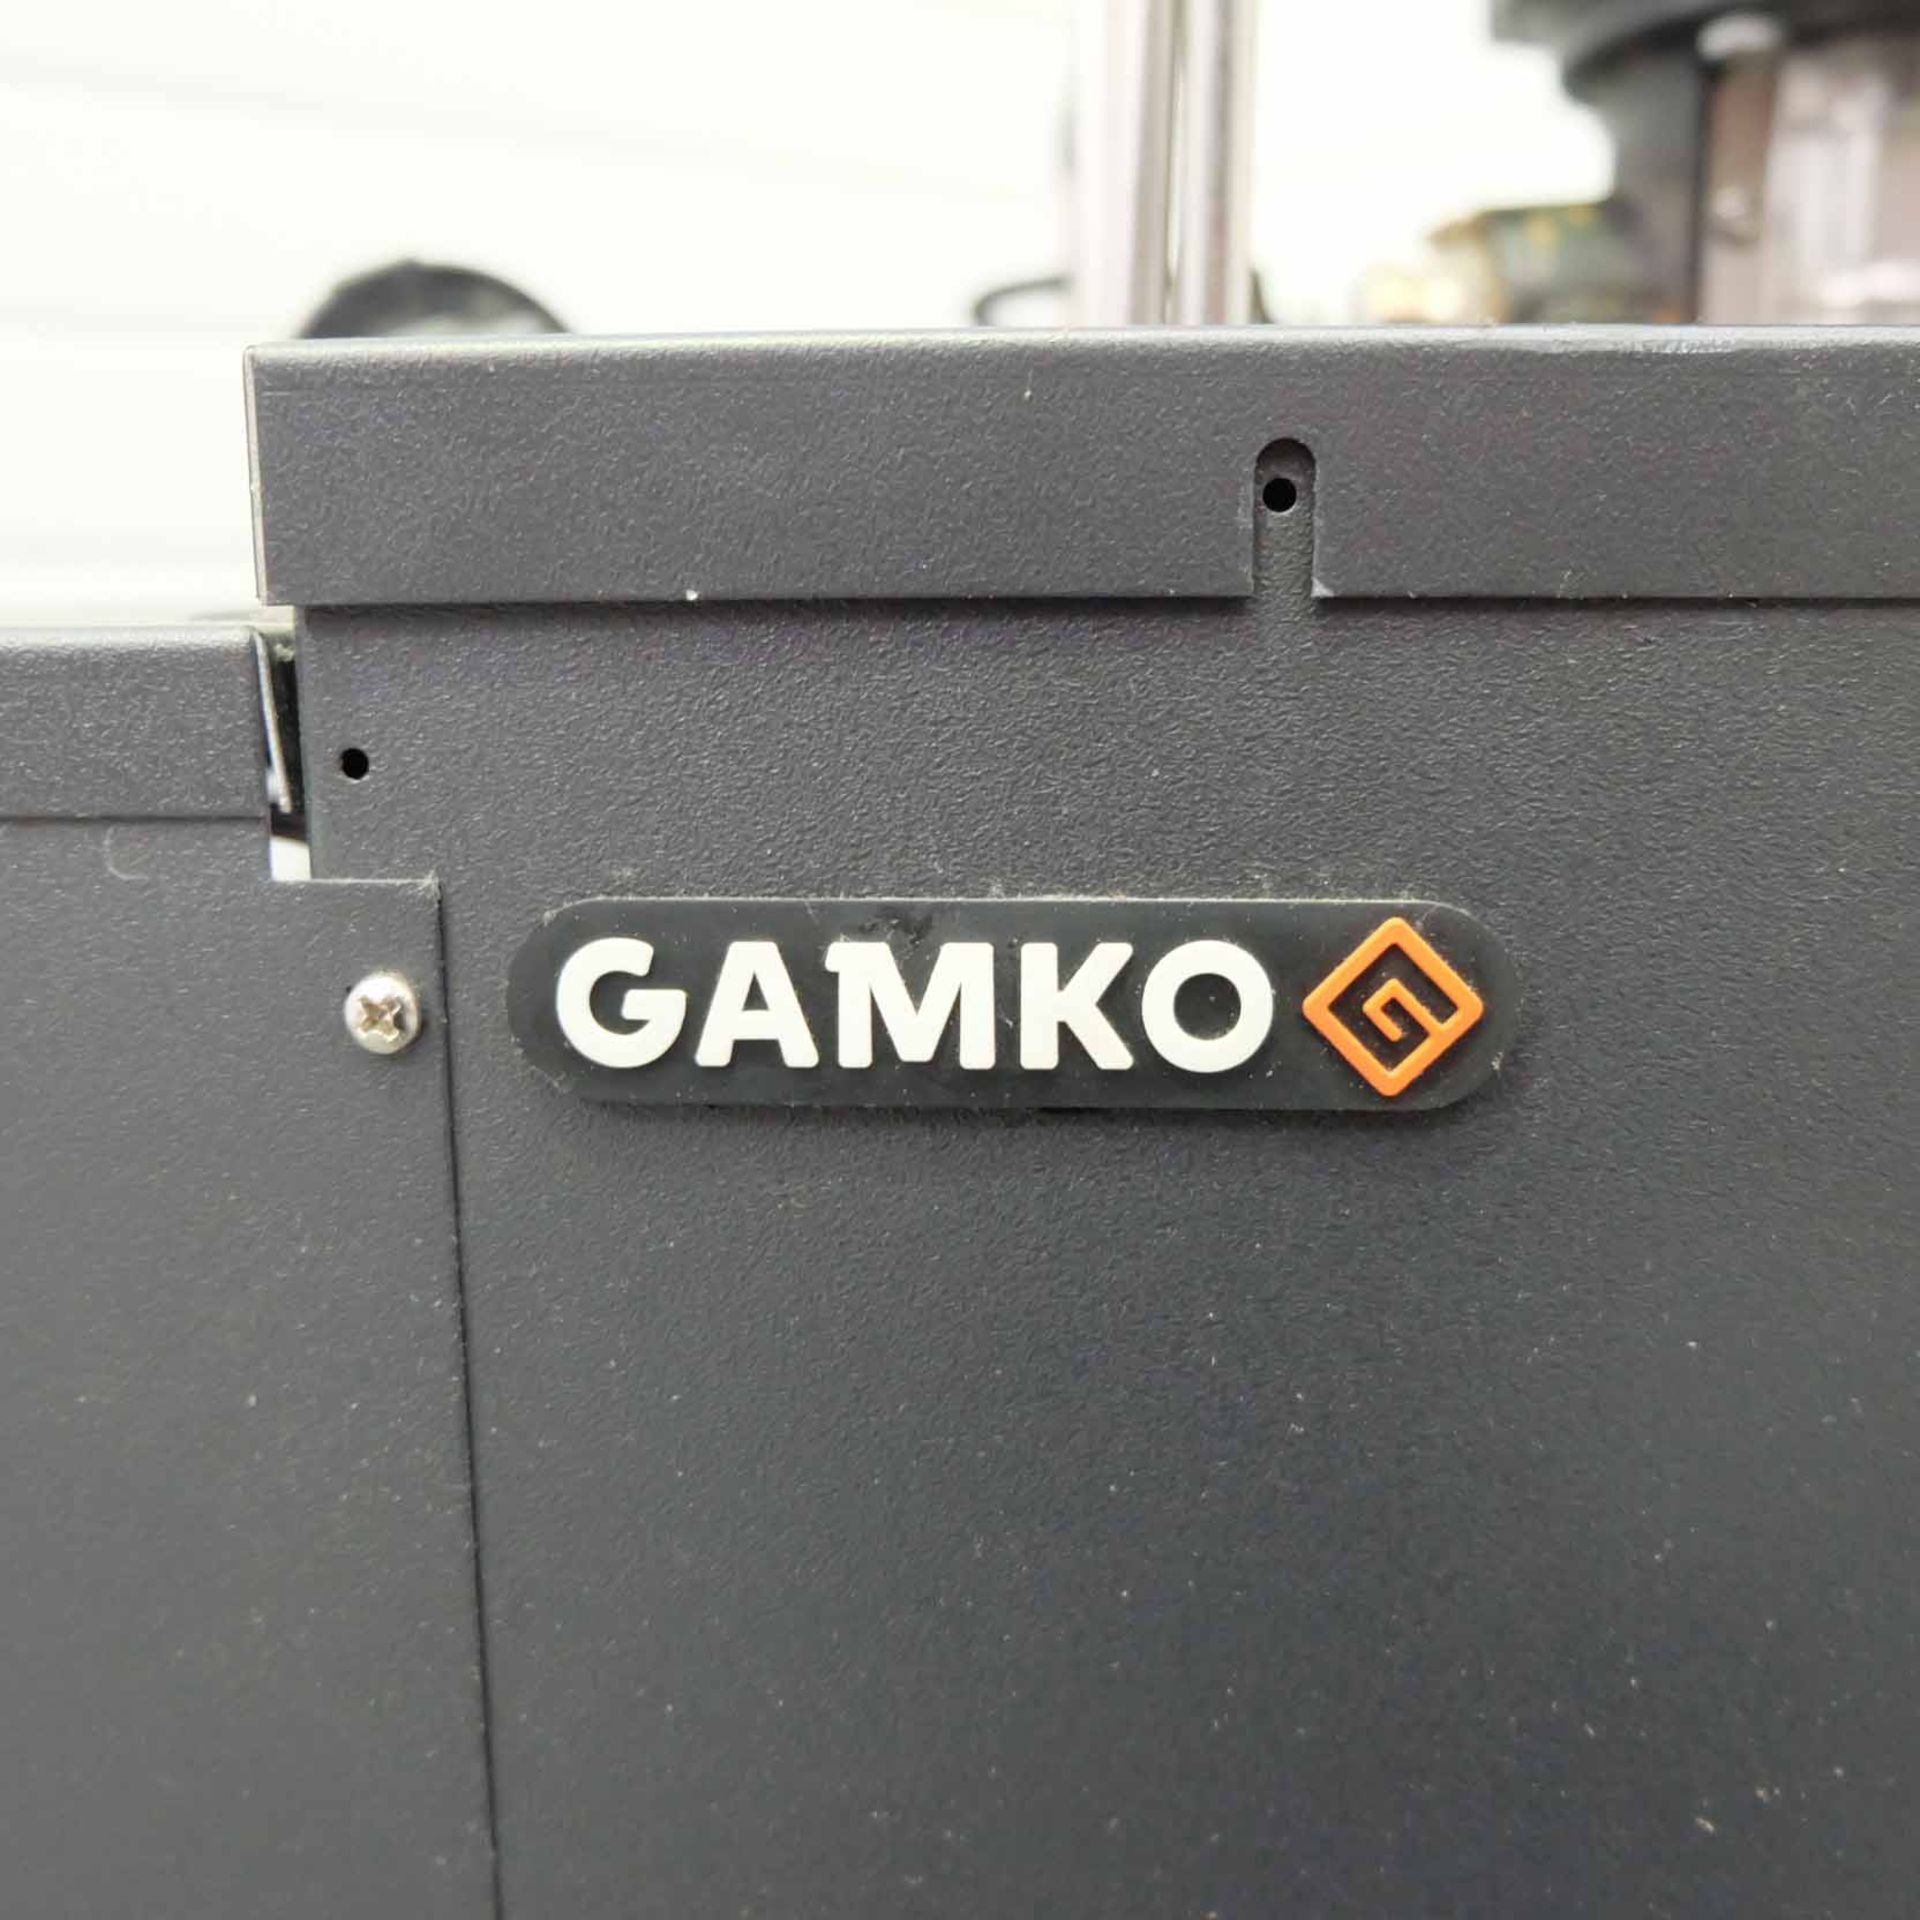 Gamko Cooler. Type BKG2-50/54L. Refridgerant R290 150GR. Voltage 240V. Test Pressure 13 Bar. Year 20 - Image 5 of 6